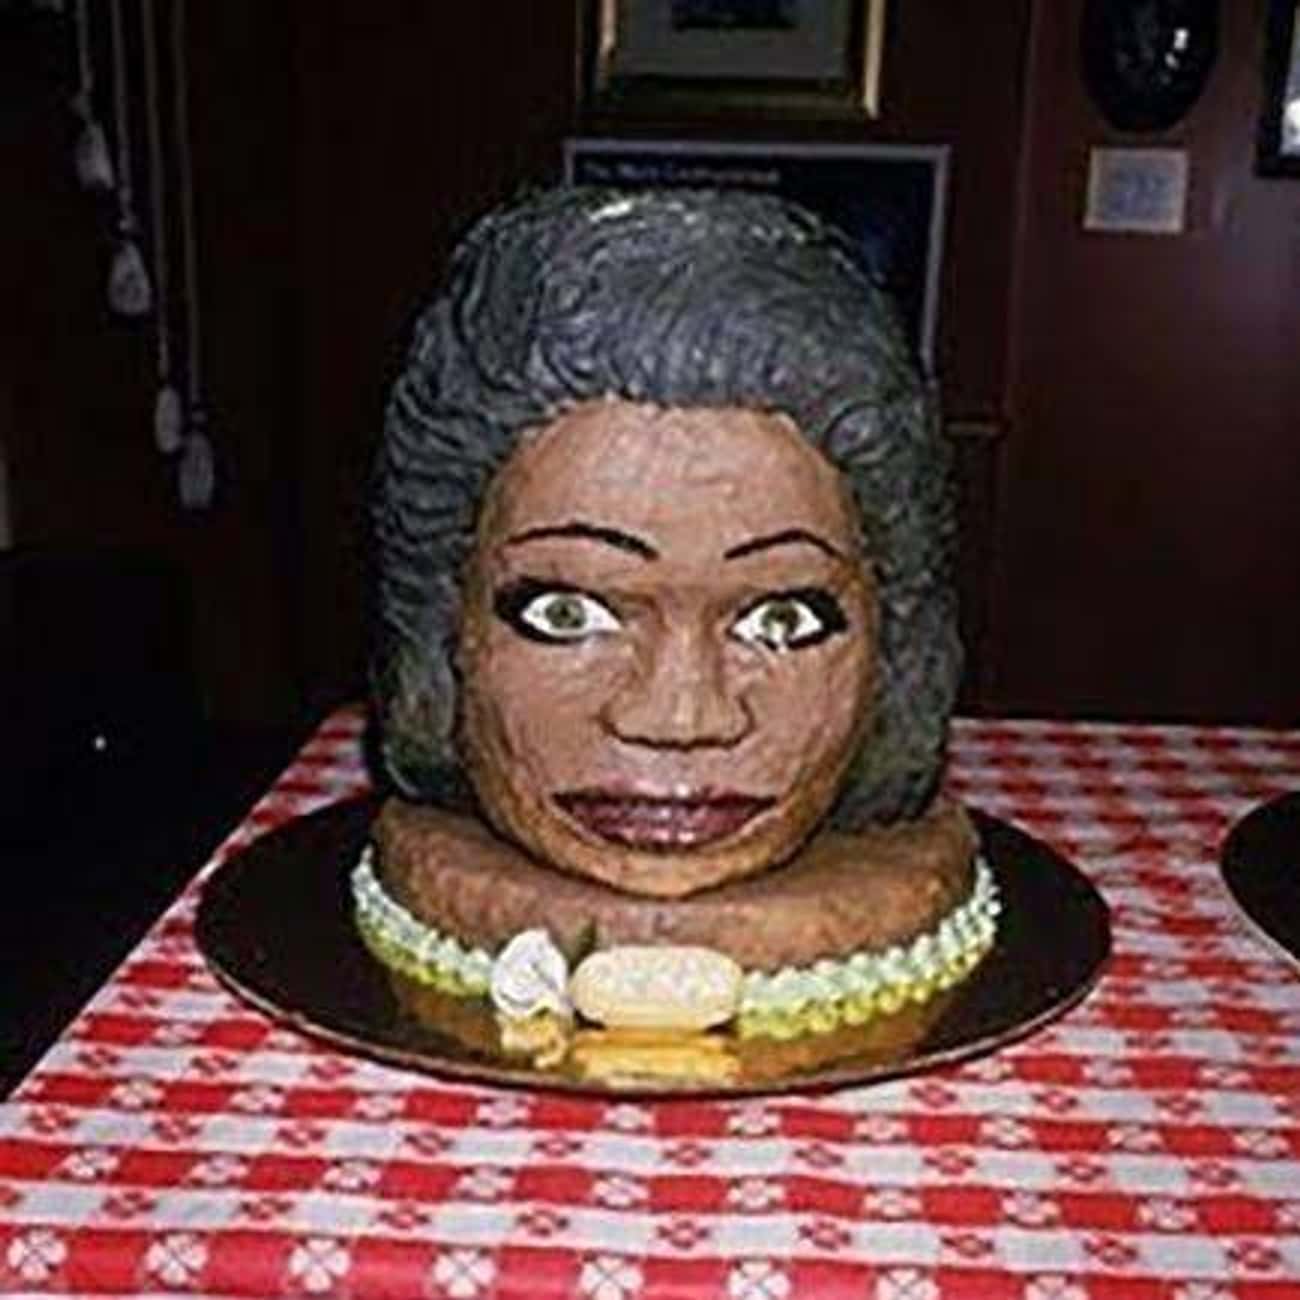 Ugly Cake